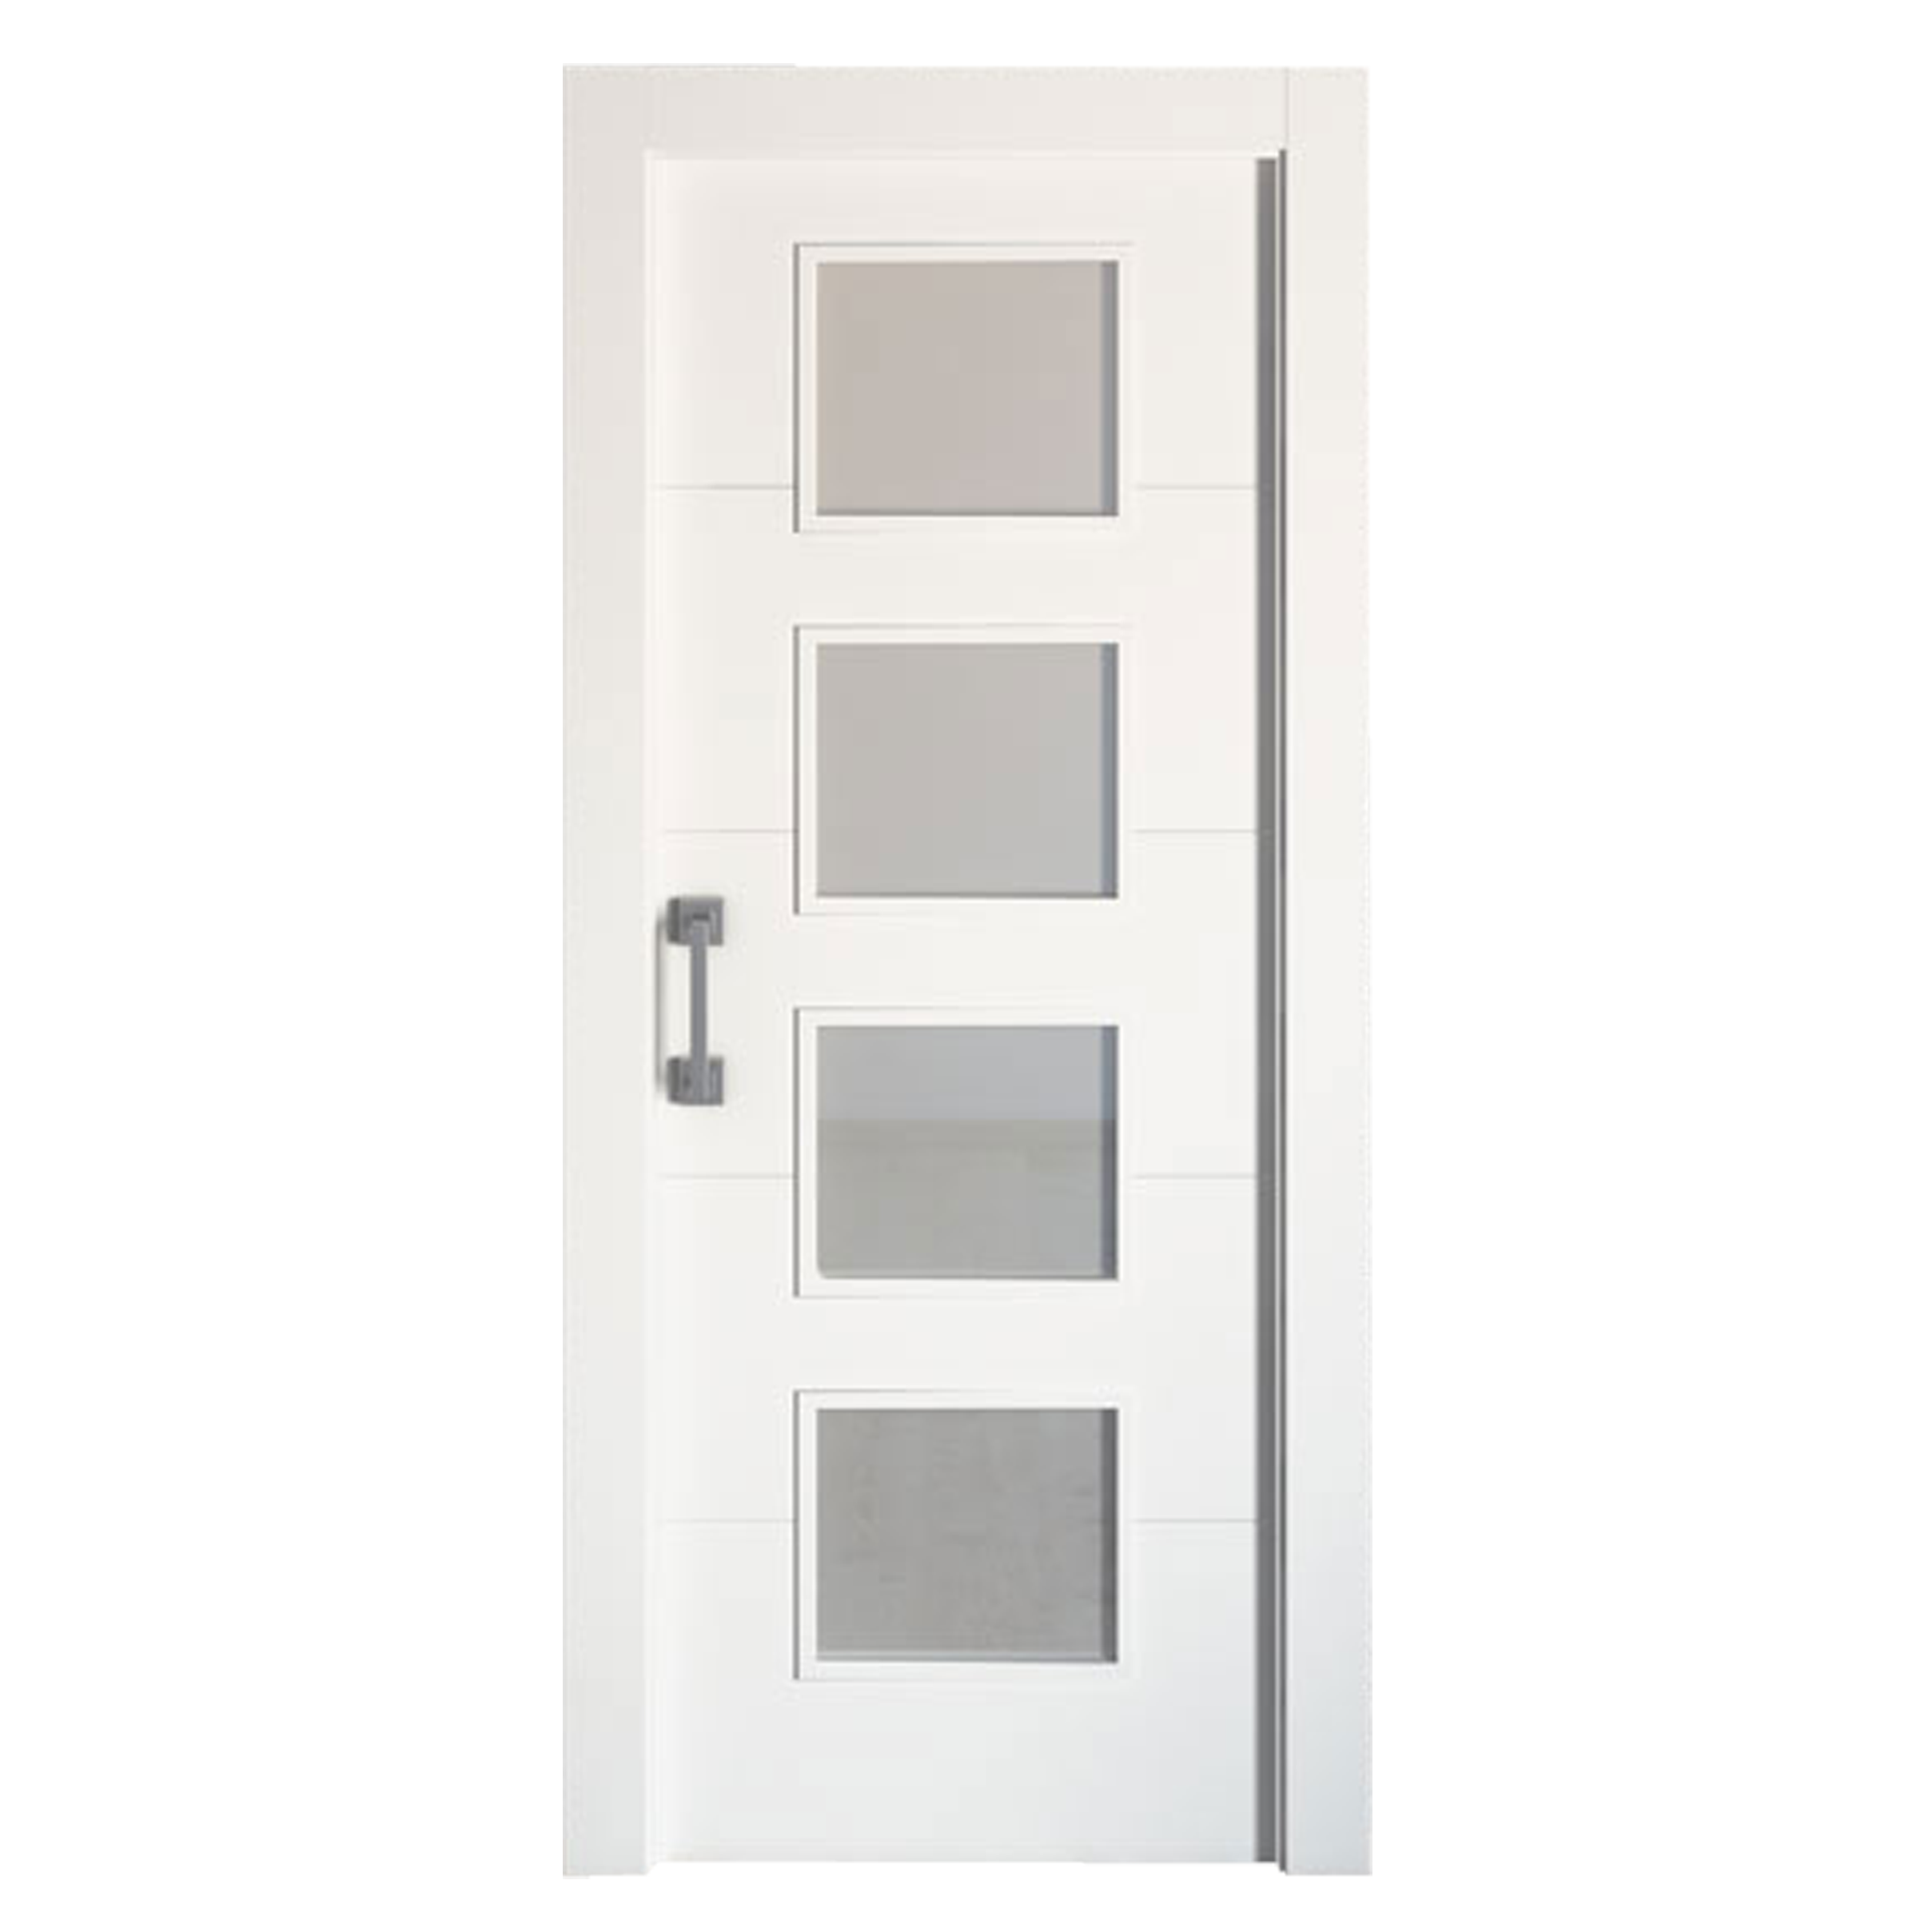 Puerta corredera lucerna blanca line plus blanco con cristal de 92.5x203cm